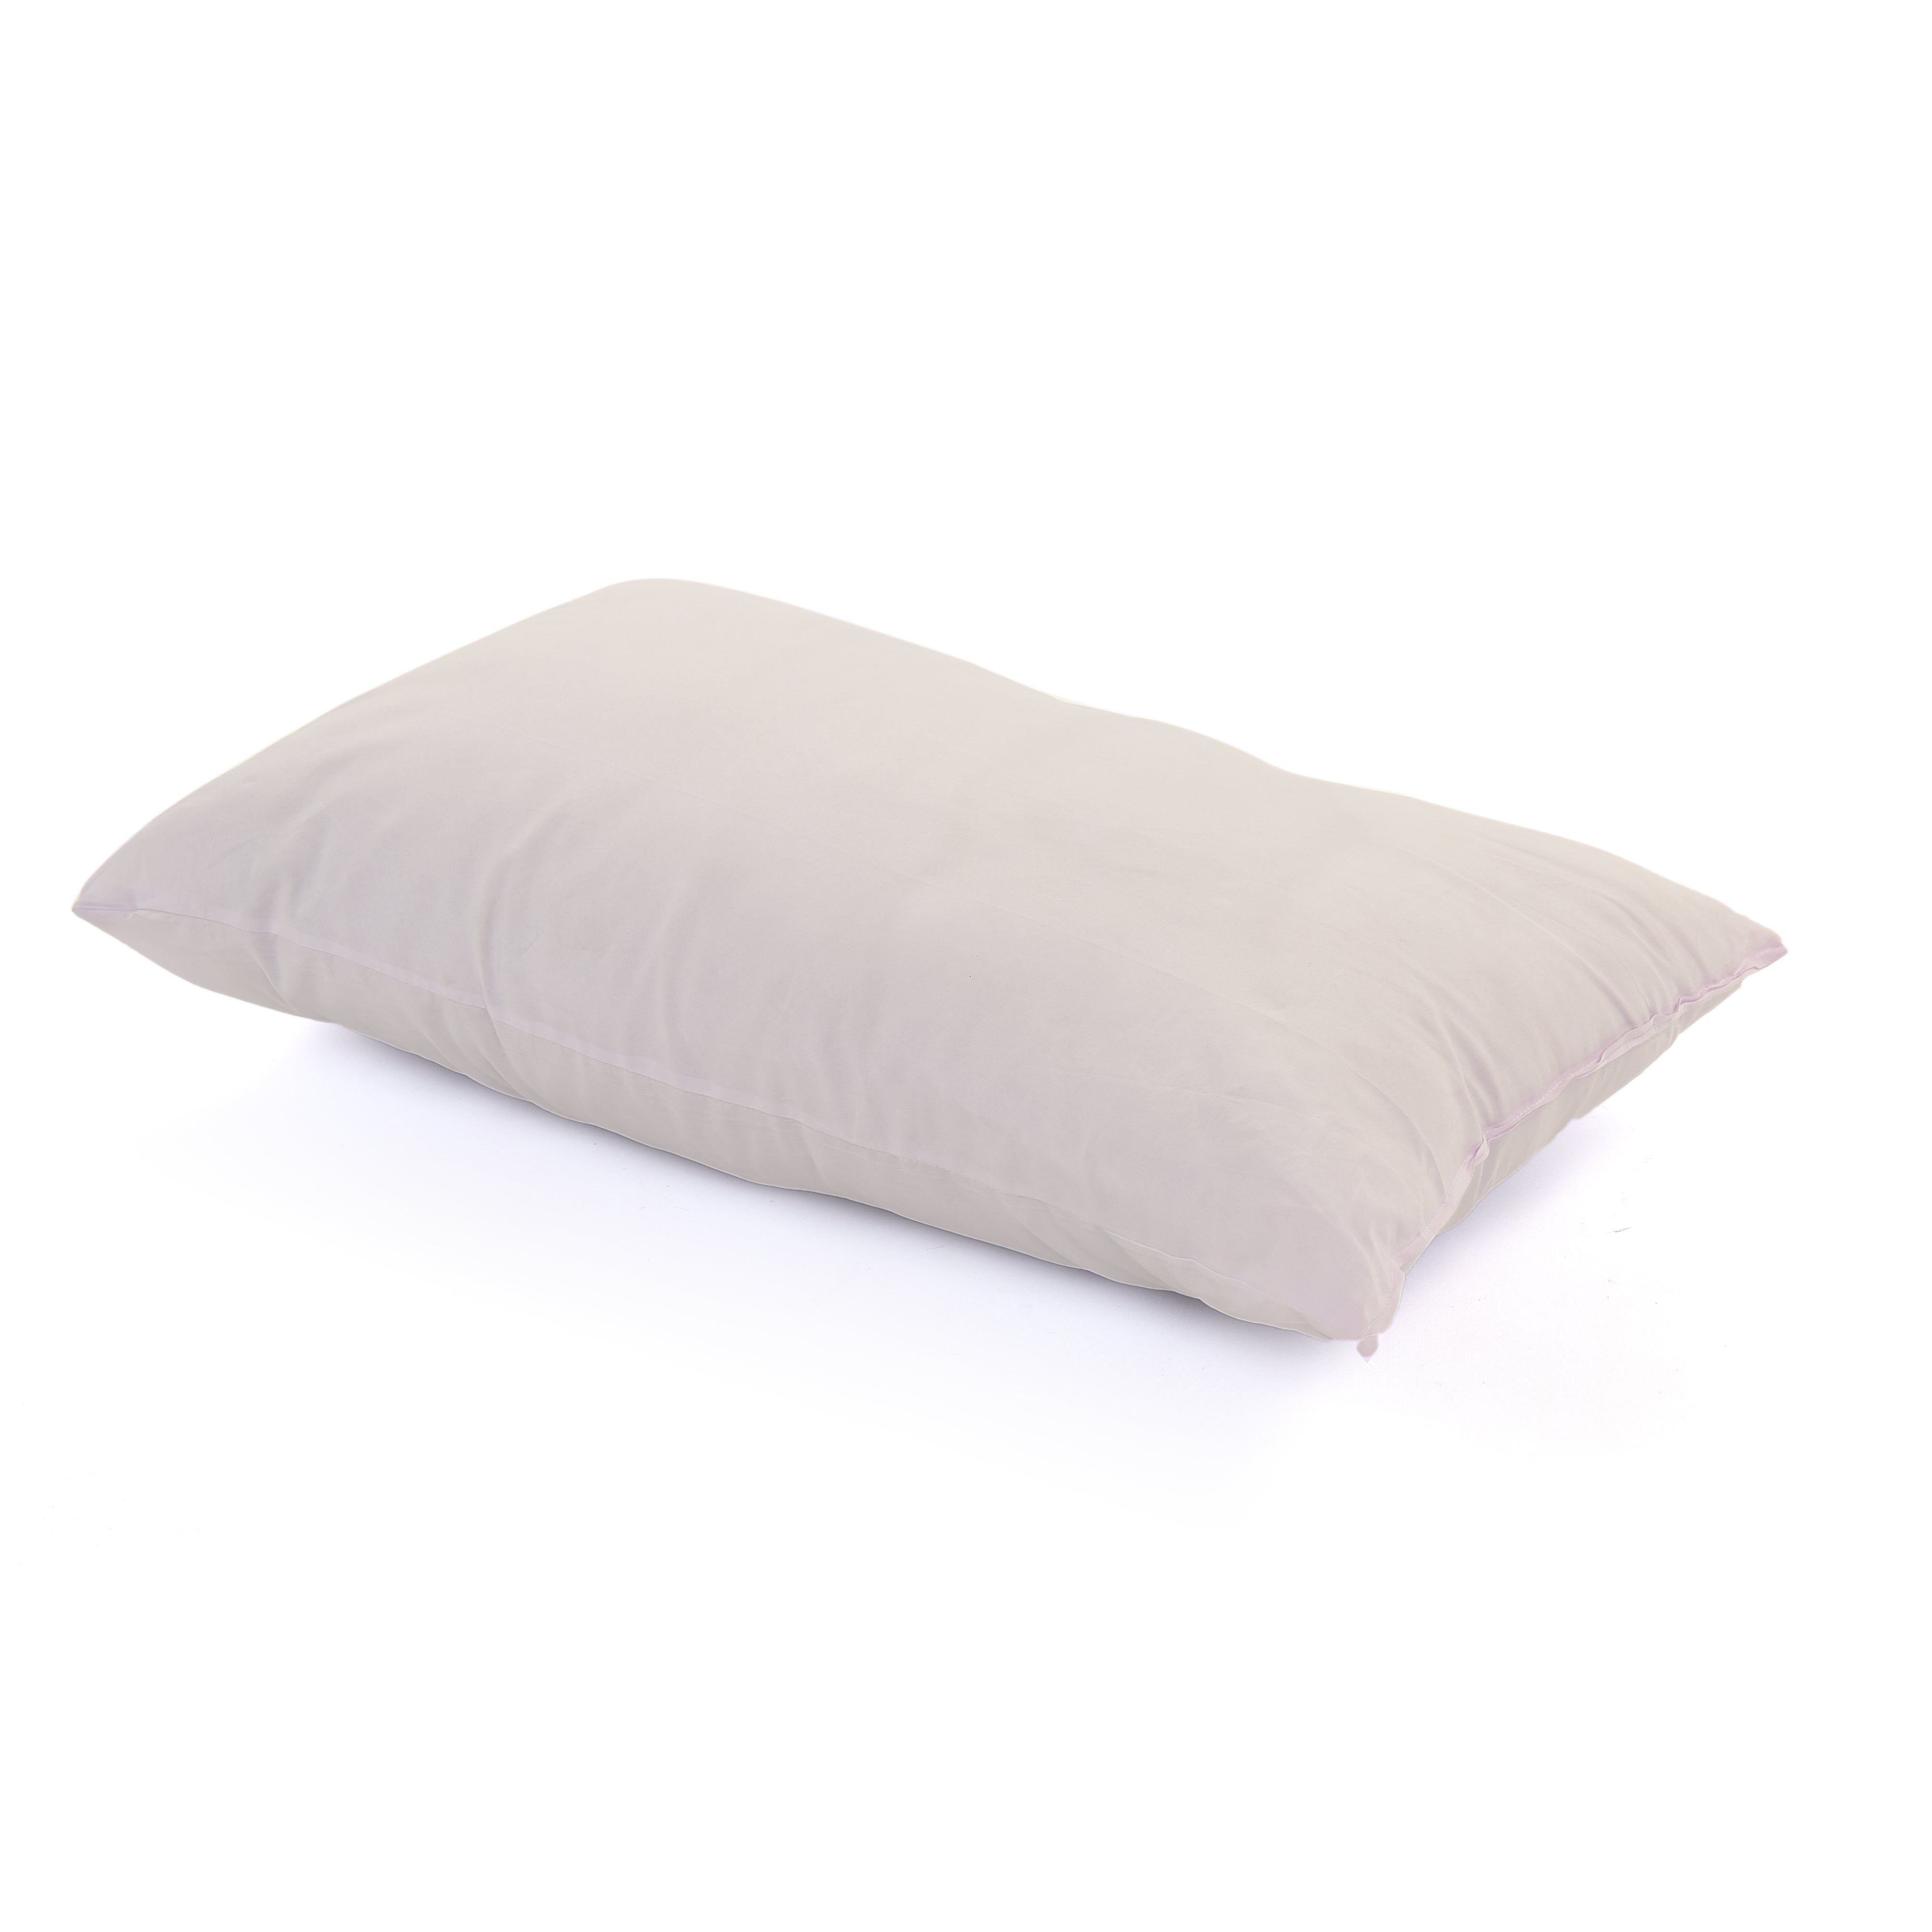 Microfiber Sleeping Pillow - White